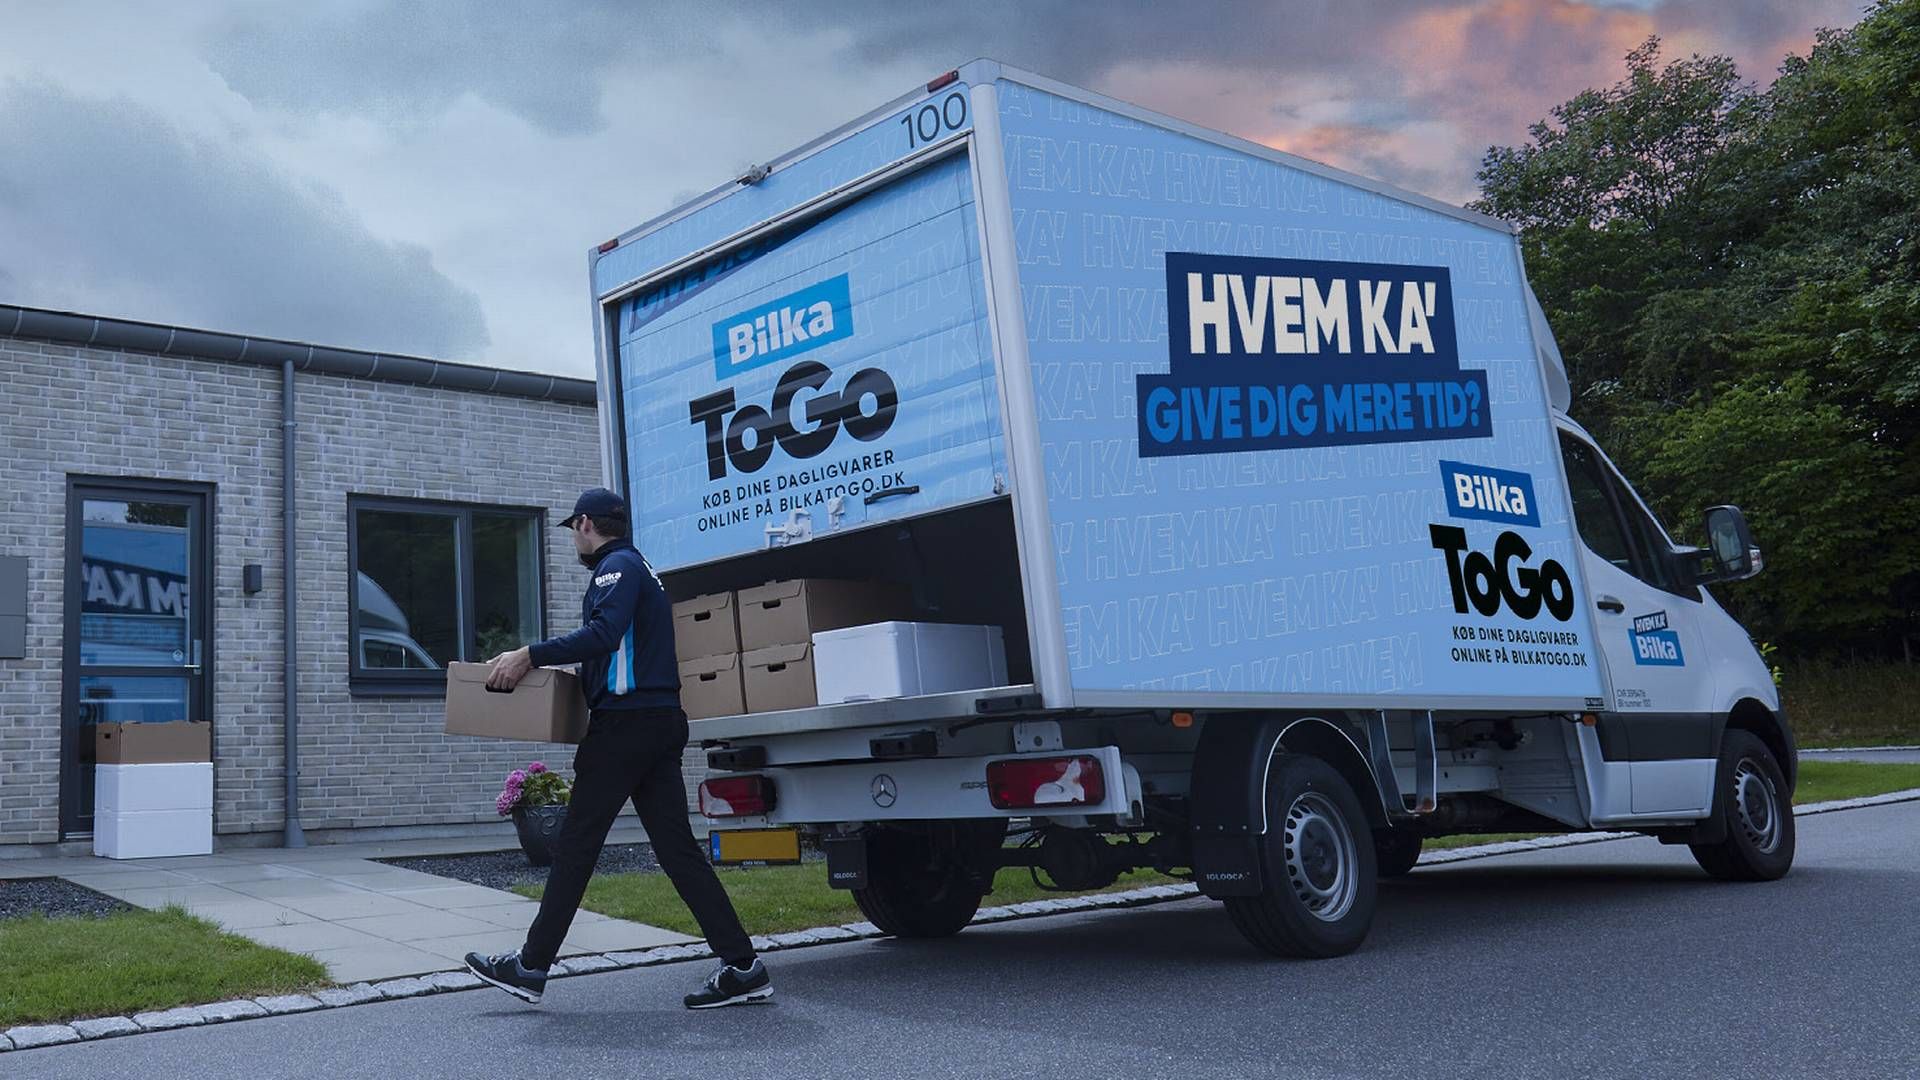 Bilka To Go vil levere varer til kunder i næsten hele landet fra Bilkas varehuse i Skalborg, Aarhus, København, Odense, Hundige og Ishøj. | Foto: PR/Salling Group